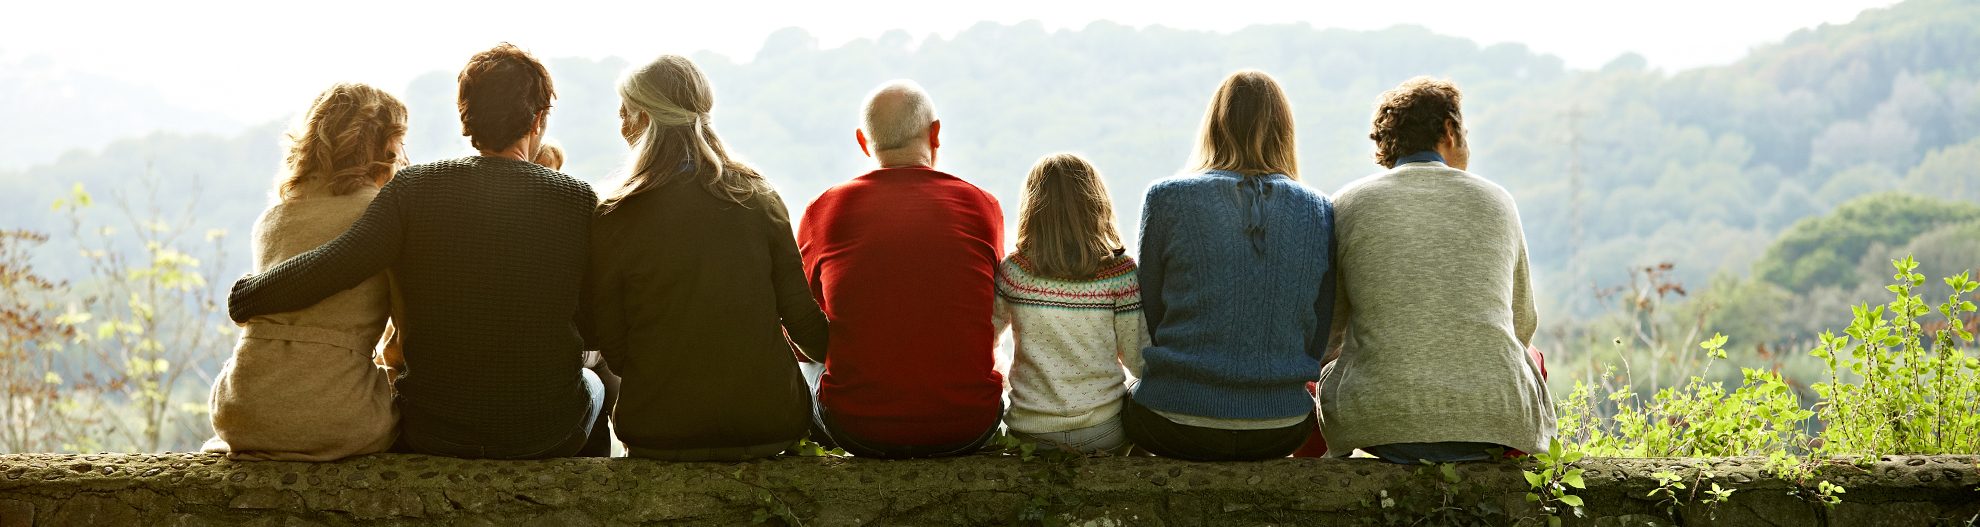 Multigenerational family sitting on a fallen tree